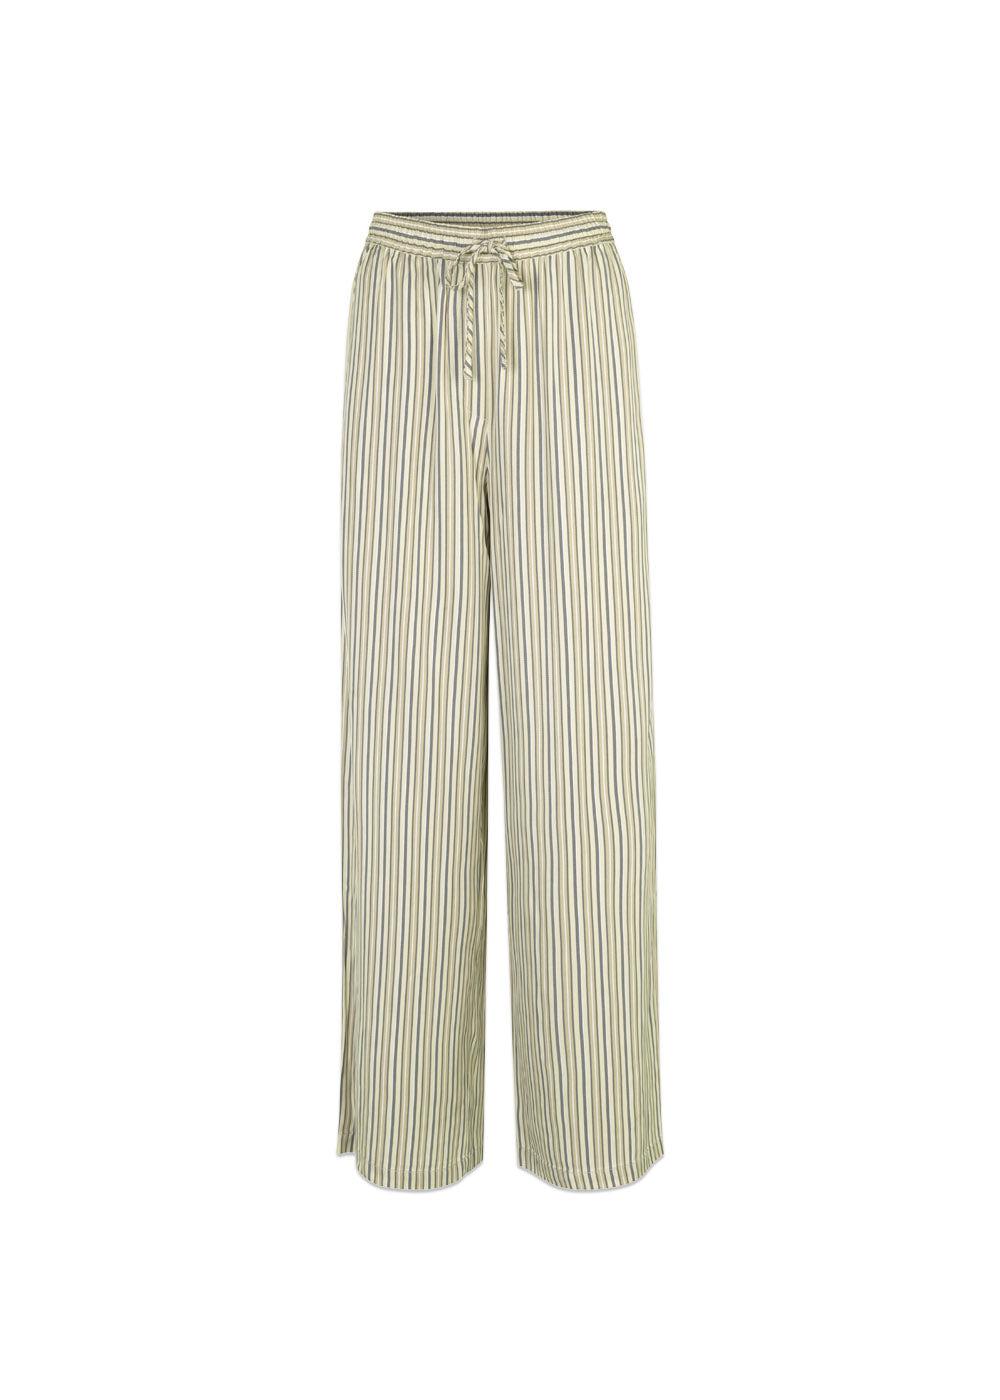 Modströms HissaMD print pants - Soft Stripe. Køb bukser her.